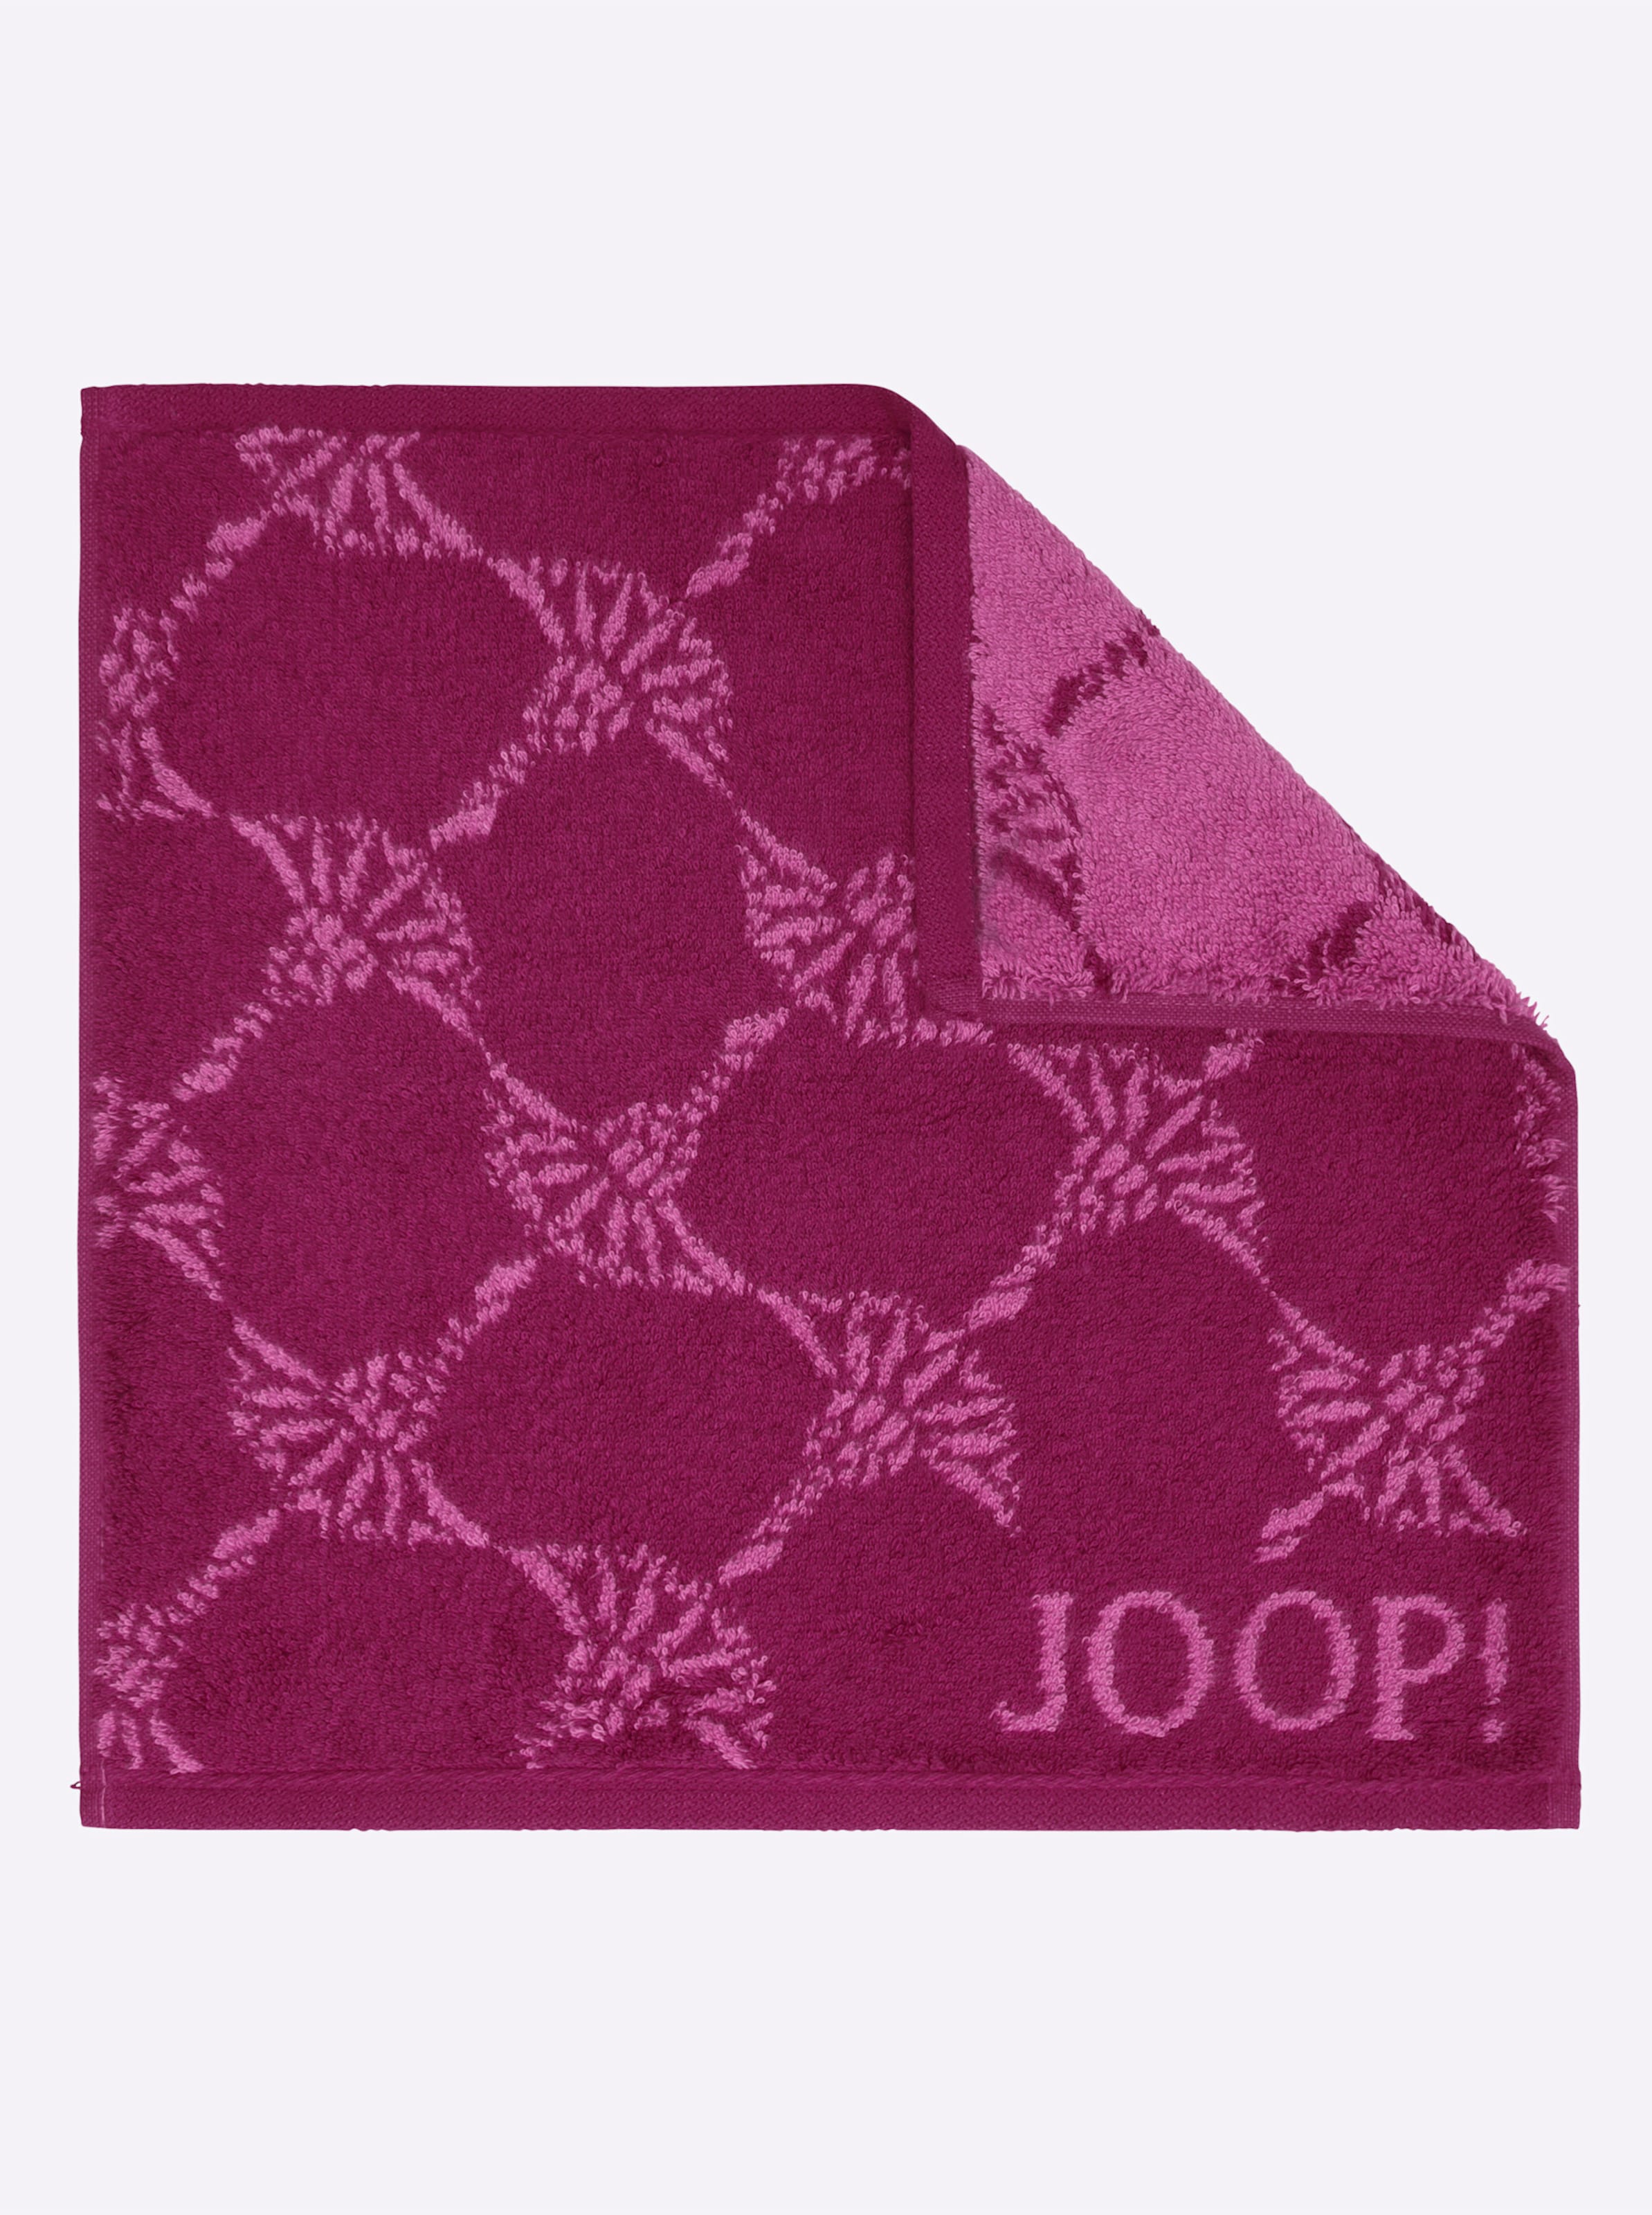 Logo und günstig Kaufen-Handtuch in malve von JOOP!. Handtuch in malve von JOOP! <![CDATA[Elegantes Handtuch-Programm der Designer-Marke JOOP! Sehr edel mit dem typischen, ornamental gestalteten Kornblumen-Dessin und JOOP!-Logo. Unvergleichlich weiche Premium-Qualität aus Walkf